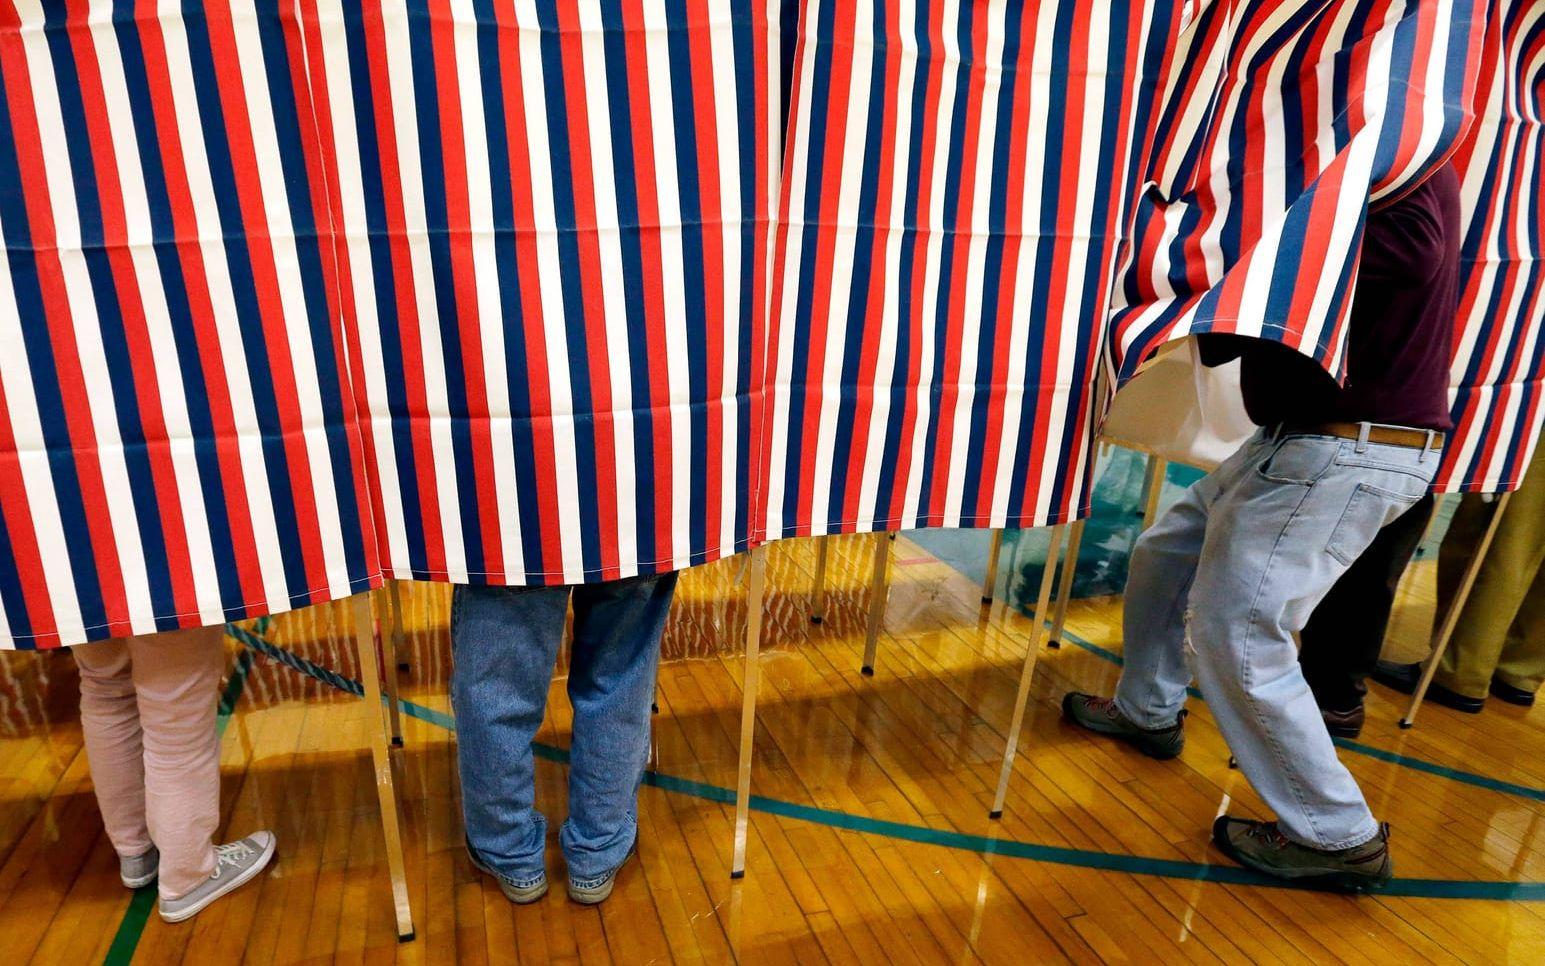 President Donald Trump påstår att miljontals människor röstade illegalt i presidentvalet den 8 november. Bild från vallokal i New Hampshire.
